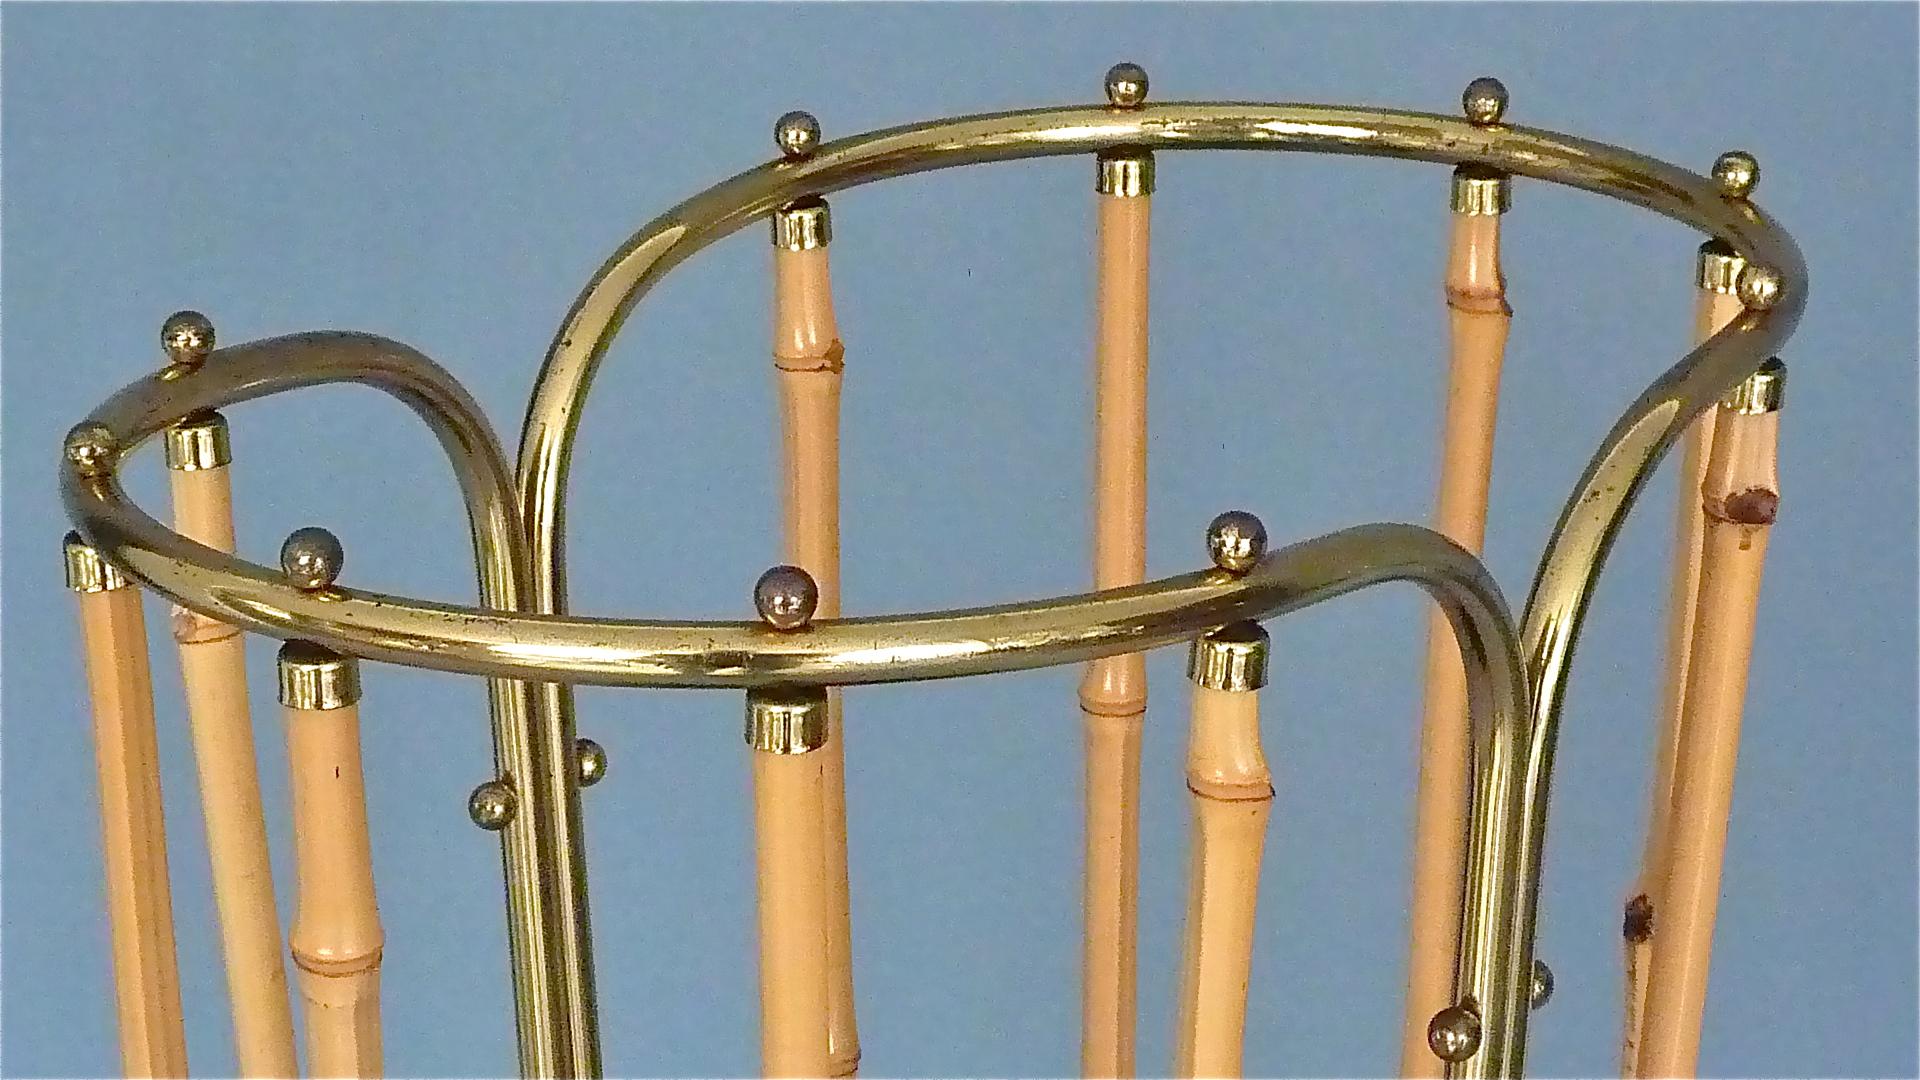 1950s Austrian Modernist Umbrella Stand Brass Bamboo, Josef Frank, Auböck Style 9